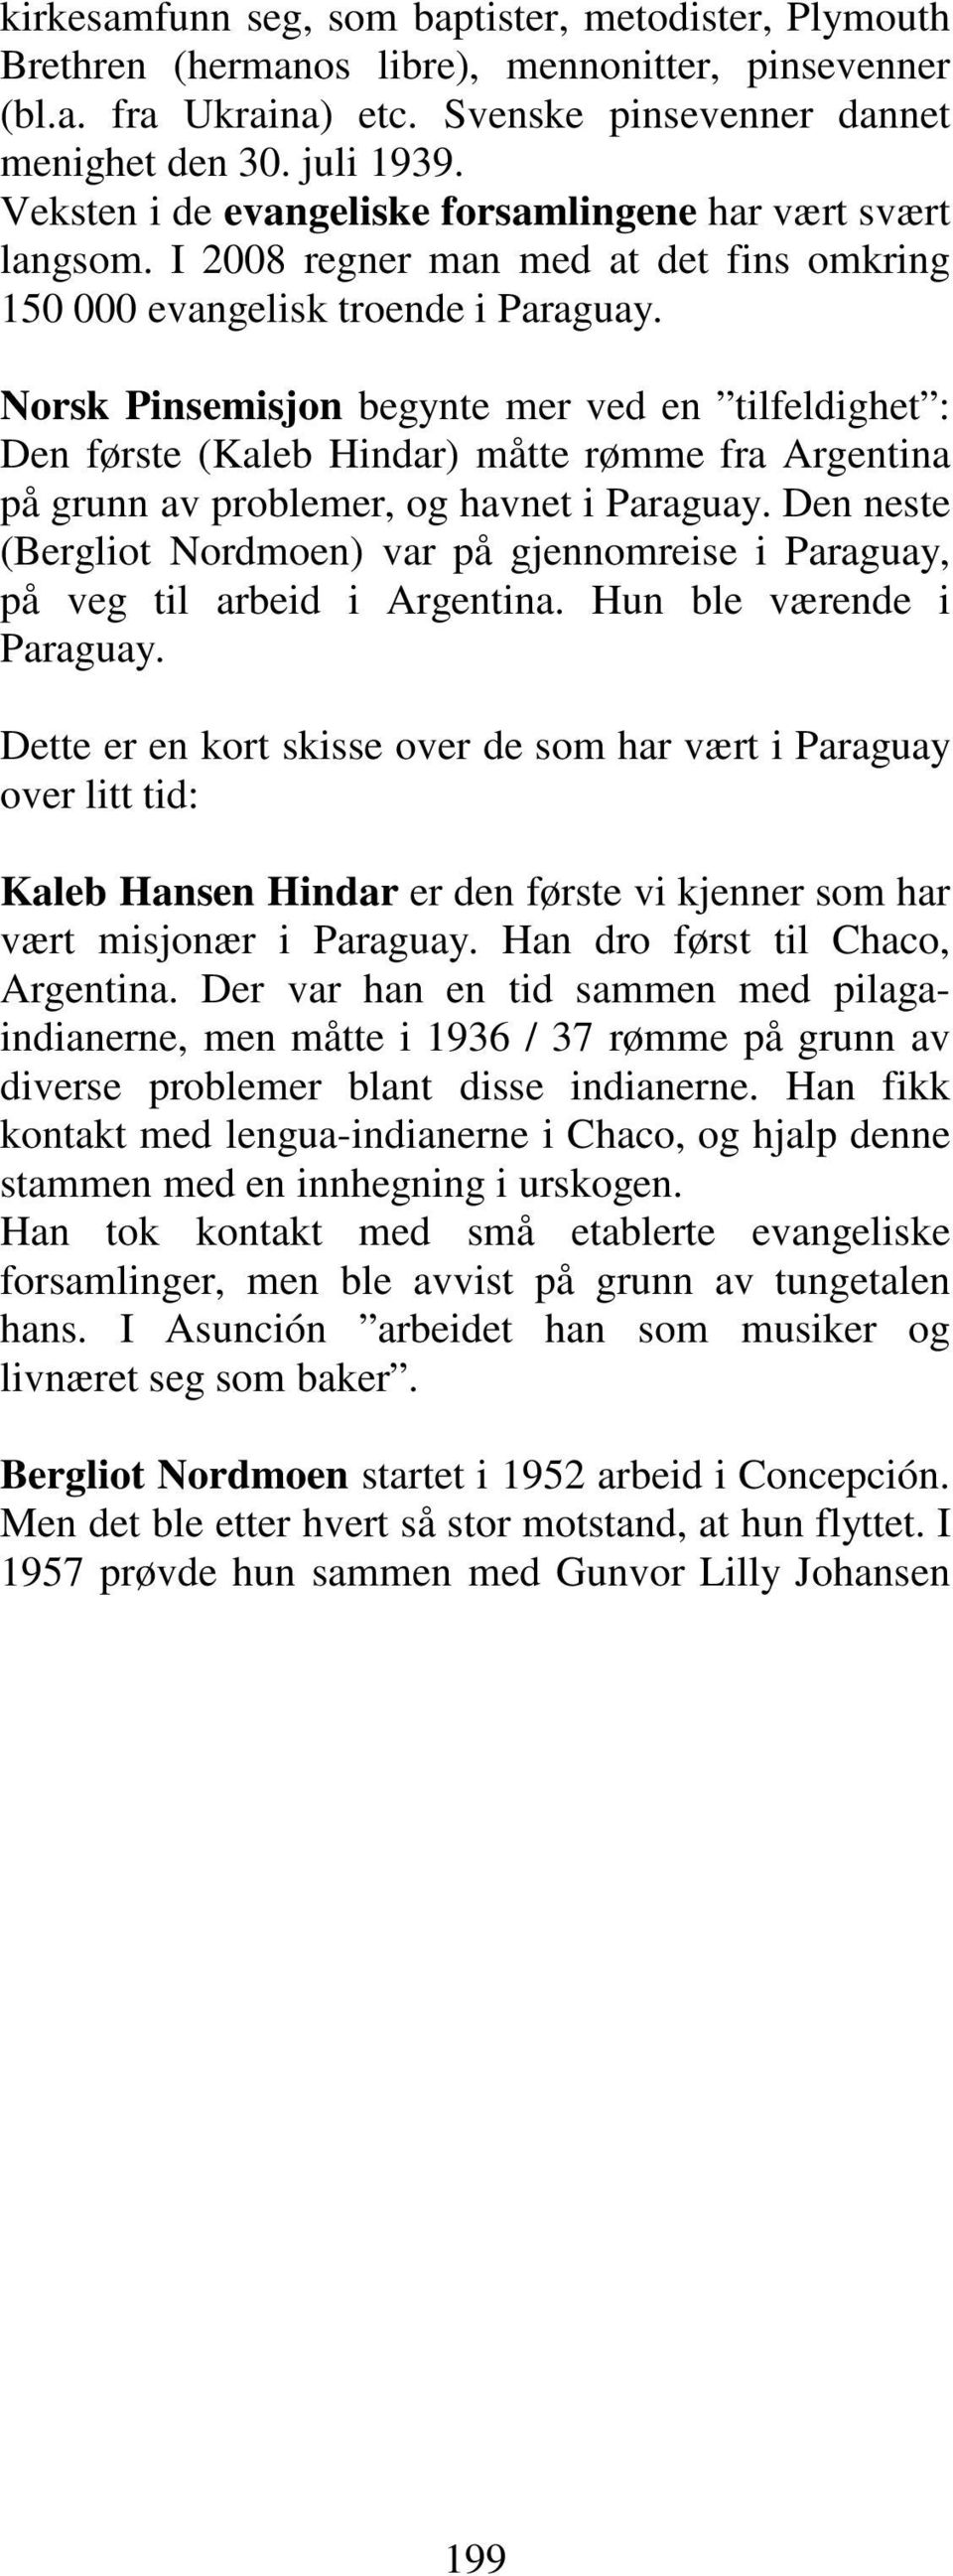 Norsk Pinsemisjon begynte mer ved en tilfeldighet : Den første (Kaleb Hindar) måtte rømme fra Argentina på grunn av problemer, og havnet i Paraguay.